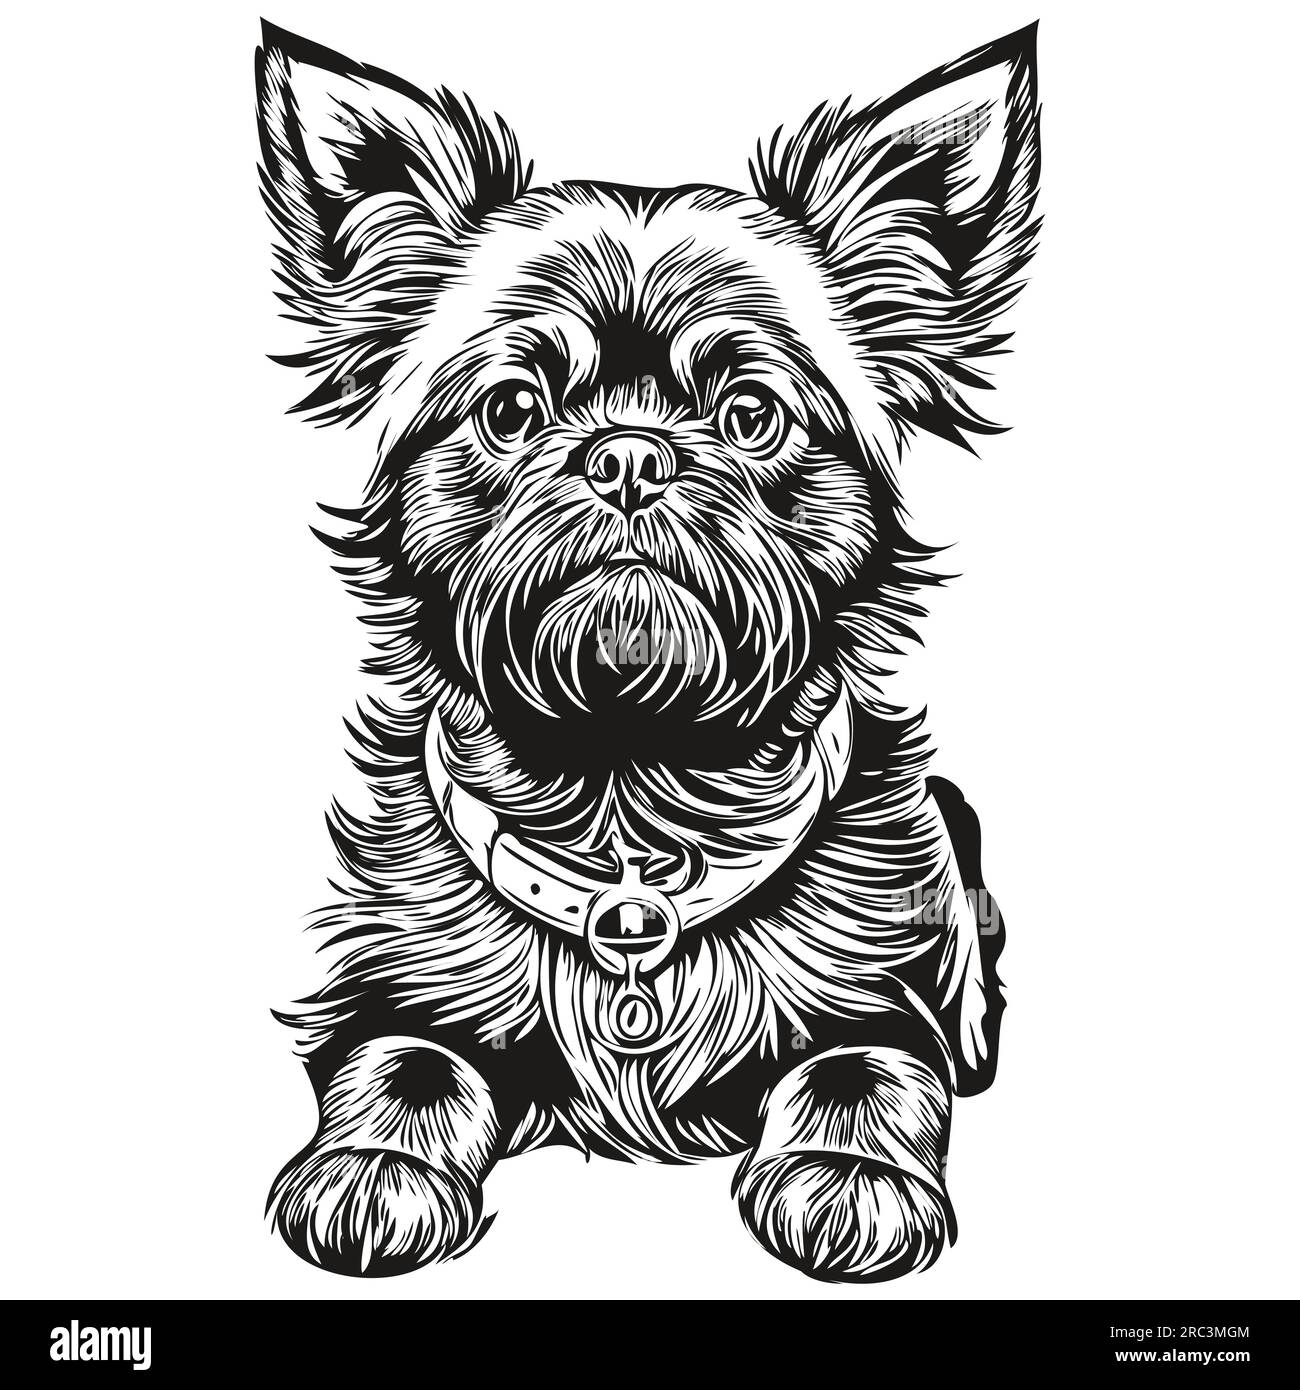 Portrait vectoriel de visage de chien Affenpinscher, dessin d'esquisse de fond blanc drôle illustration d'animal de compagnie Illustration de Vecteur